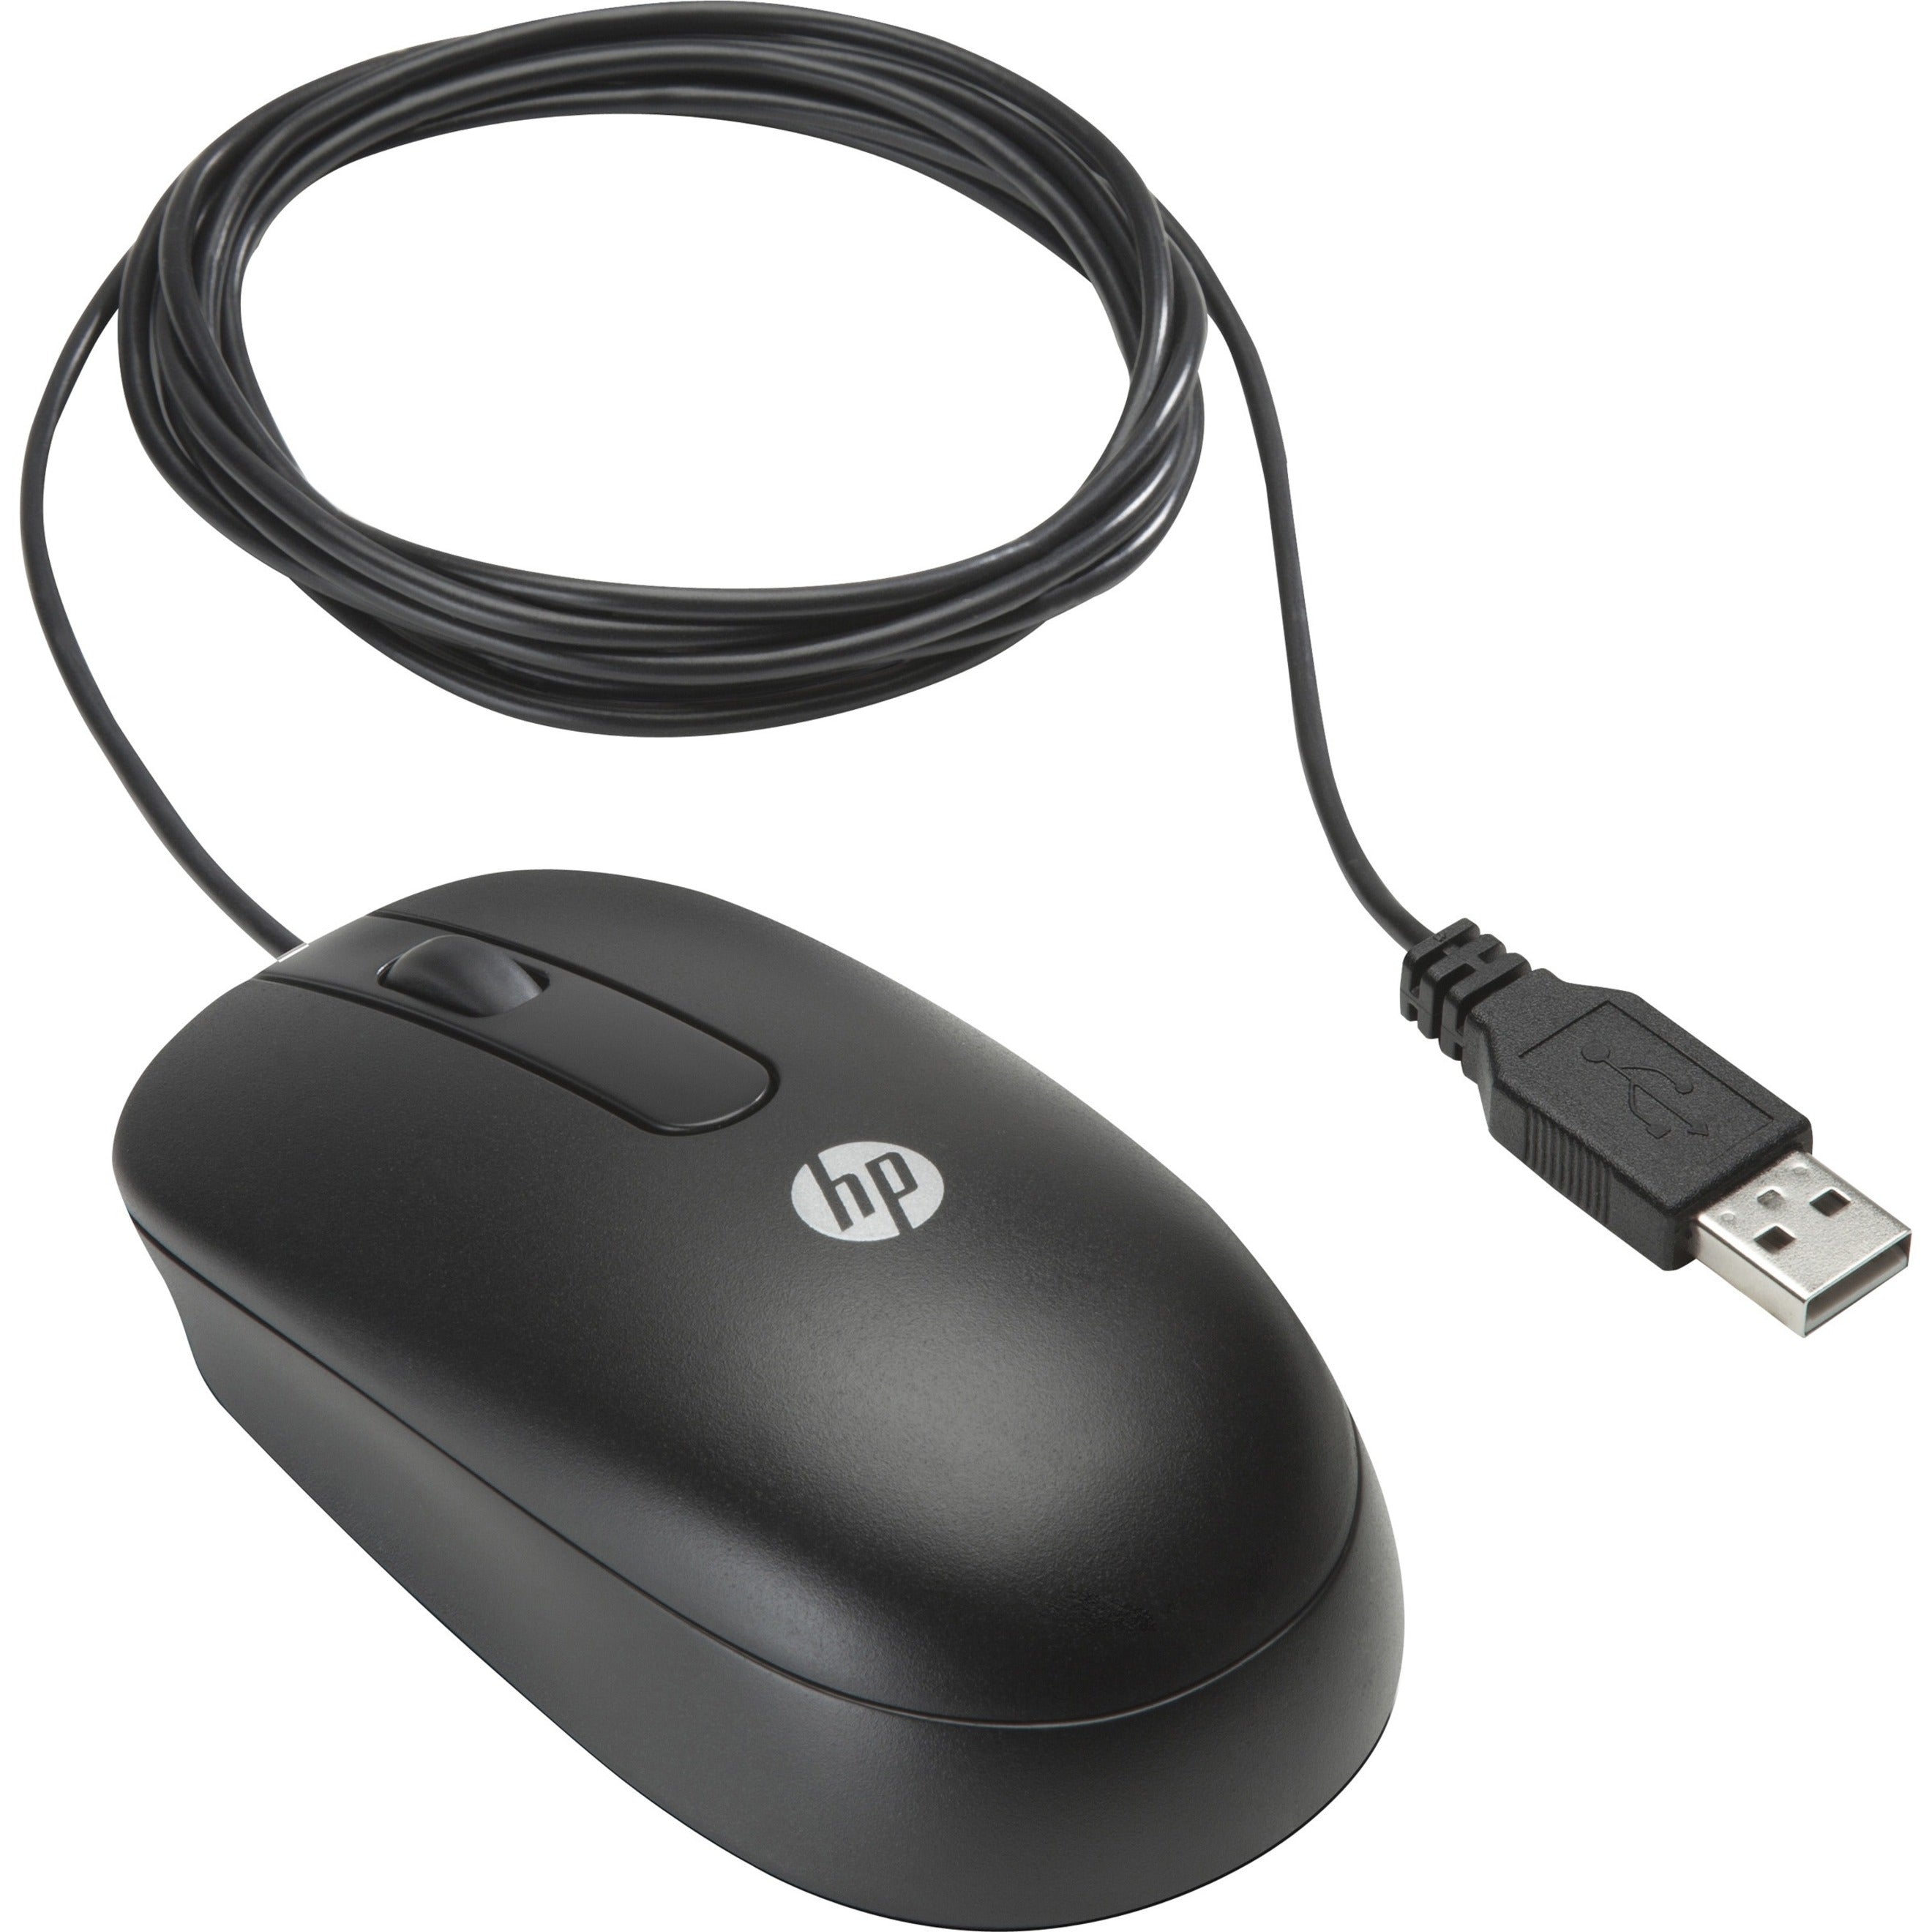 HP QY777AA USB マウス、エルゴノミックな対称デザイン、光学式ムーブメント検出、3つのボタン、800 DPI、5.91 ft ケーブル